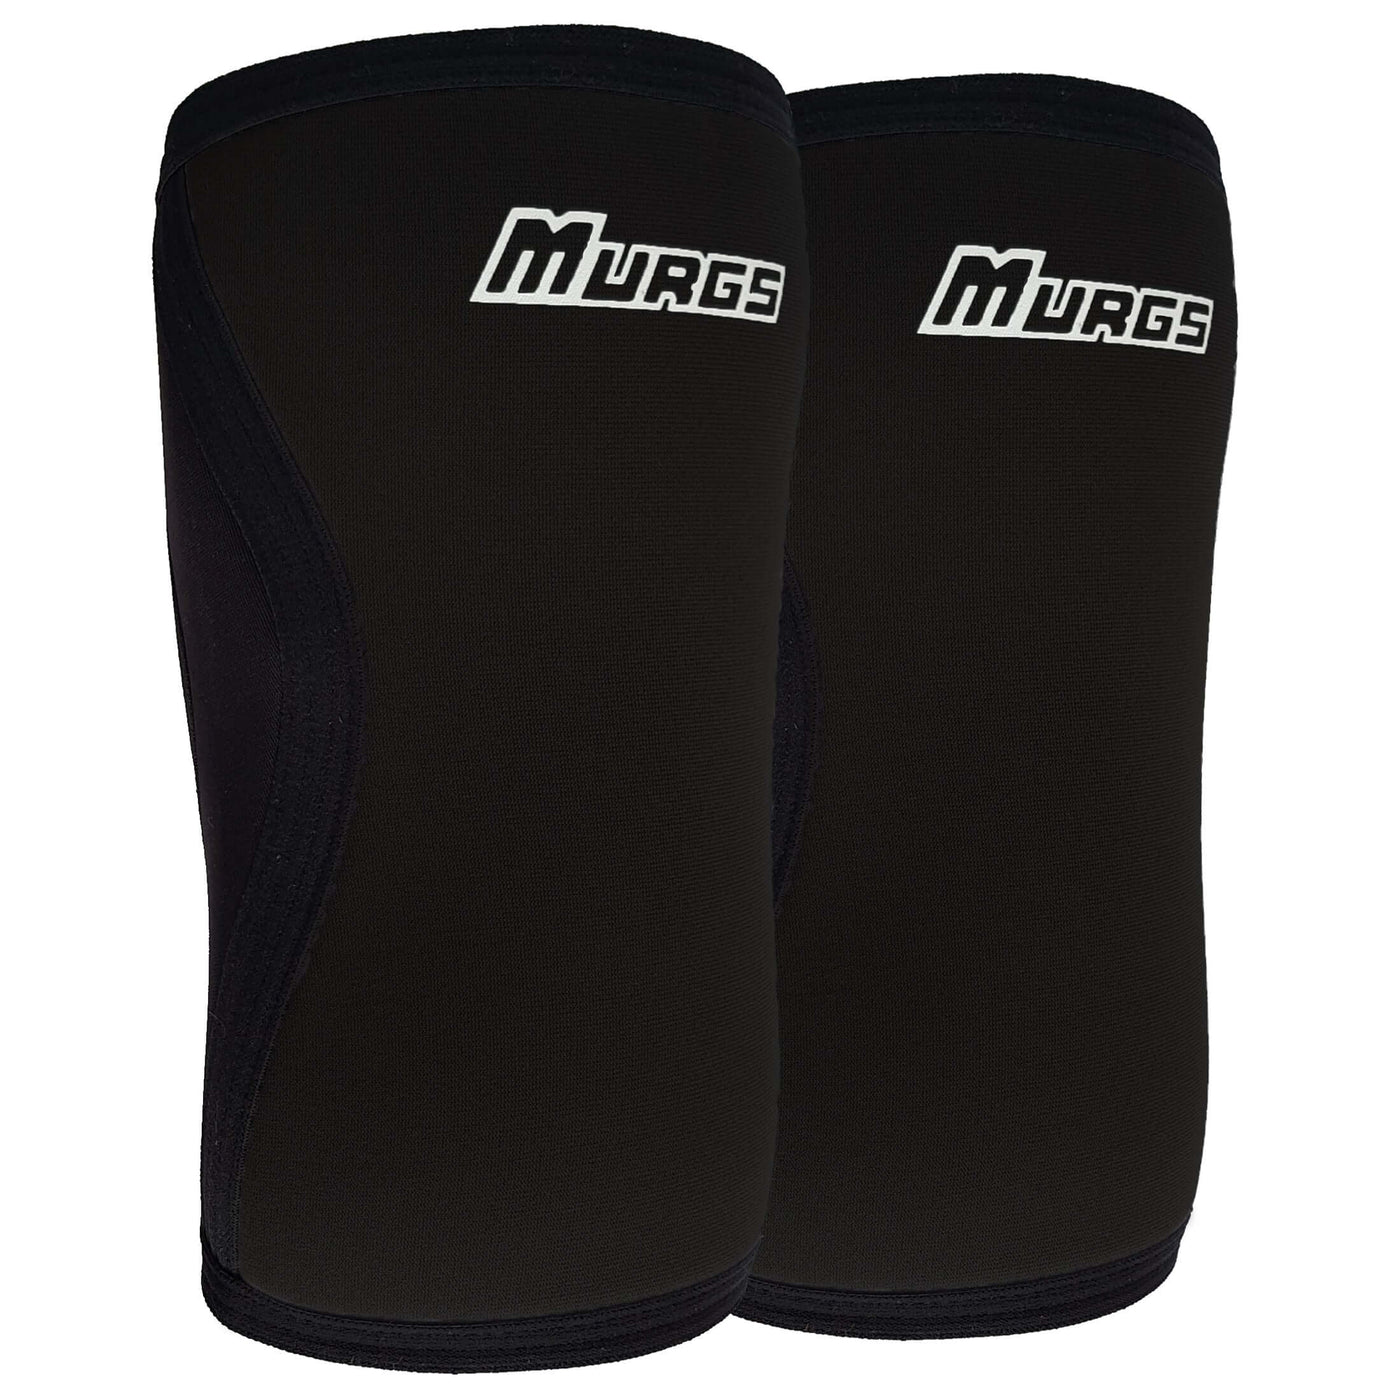 Murgs 3mm knee sleeves pair Black